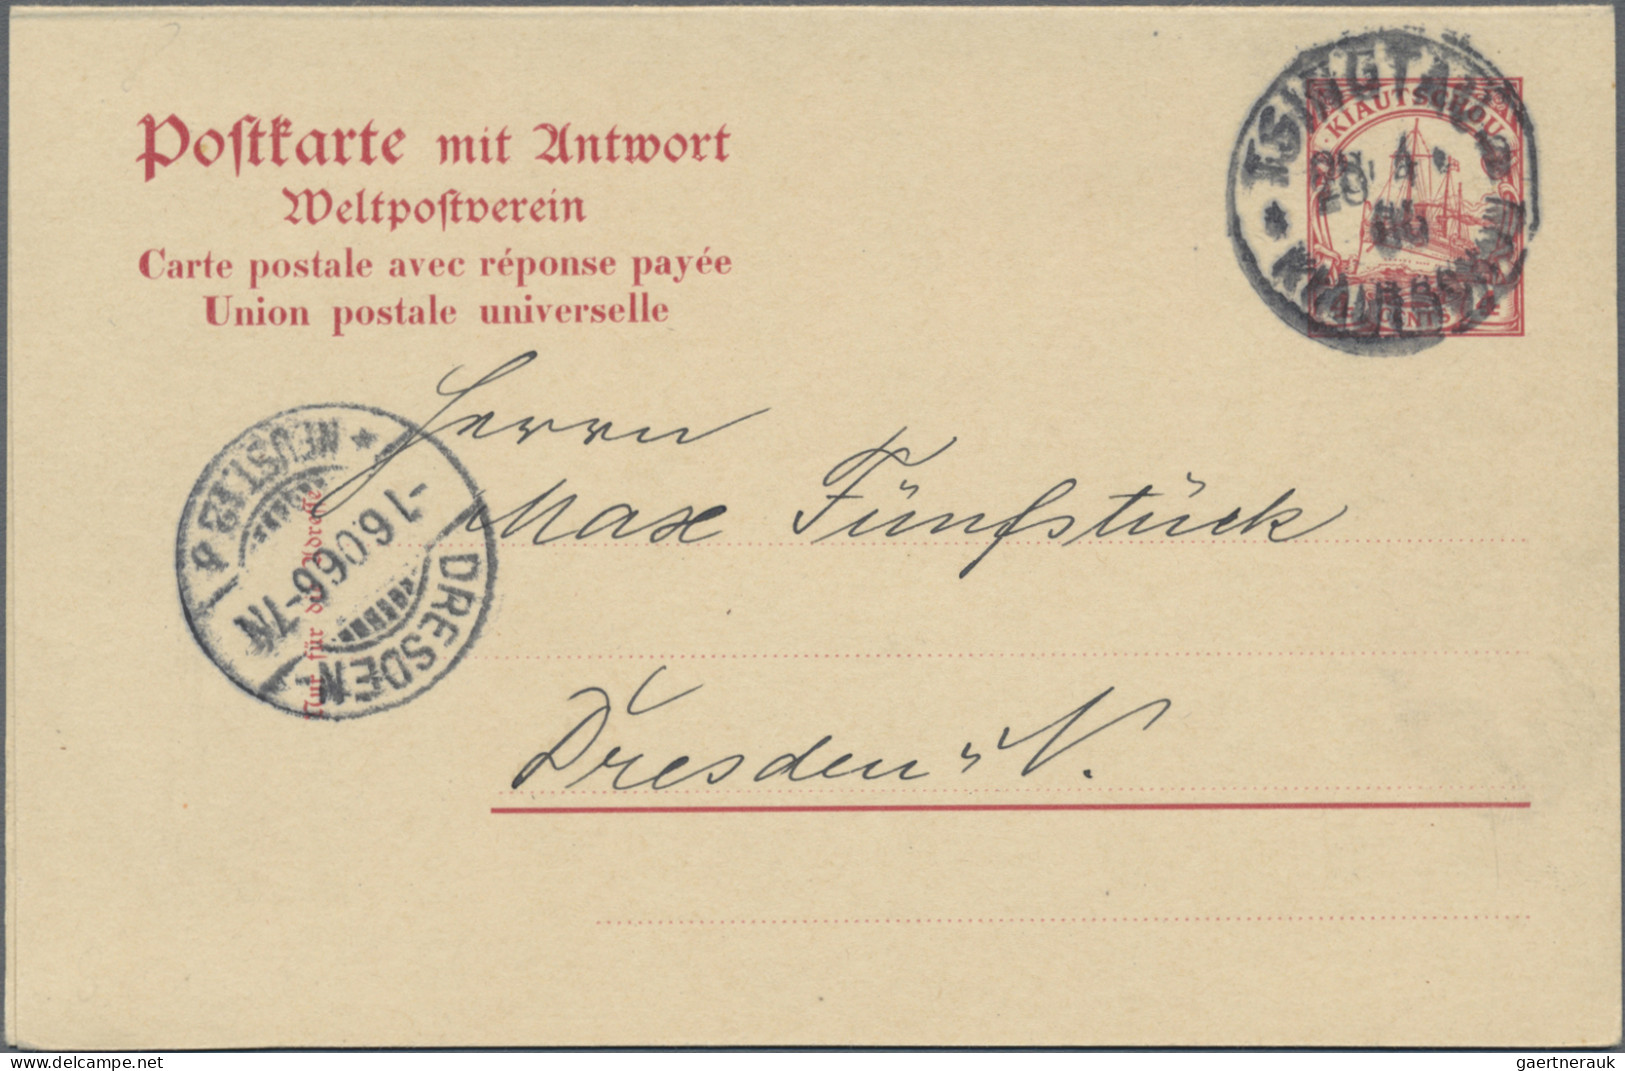 Deutsche Kolonien - Kiautschou - Ganzsachen: 1900/1911, saubere Partie von 17 ge